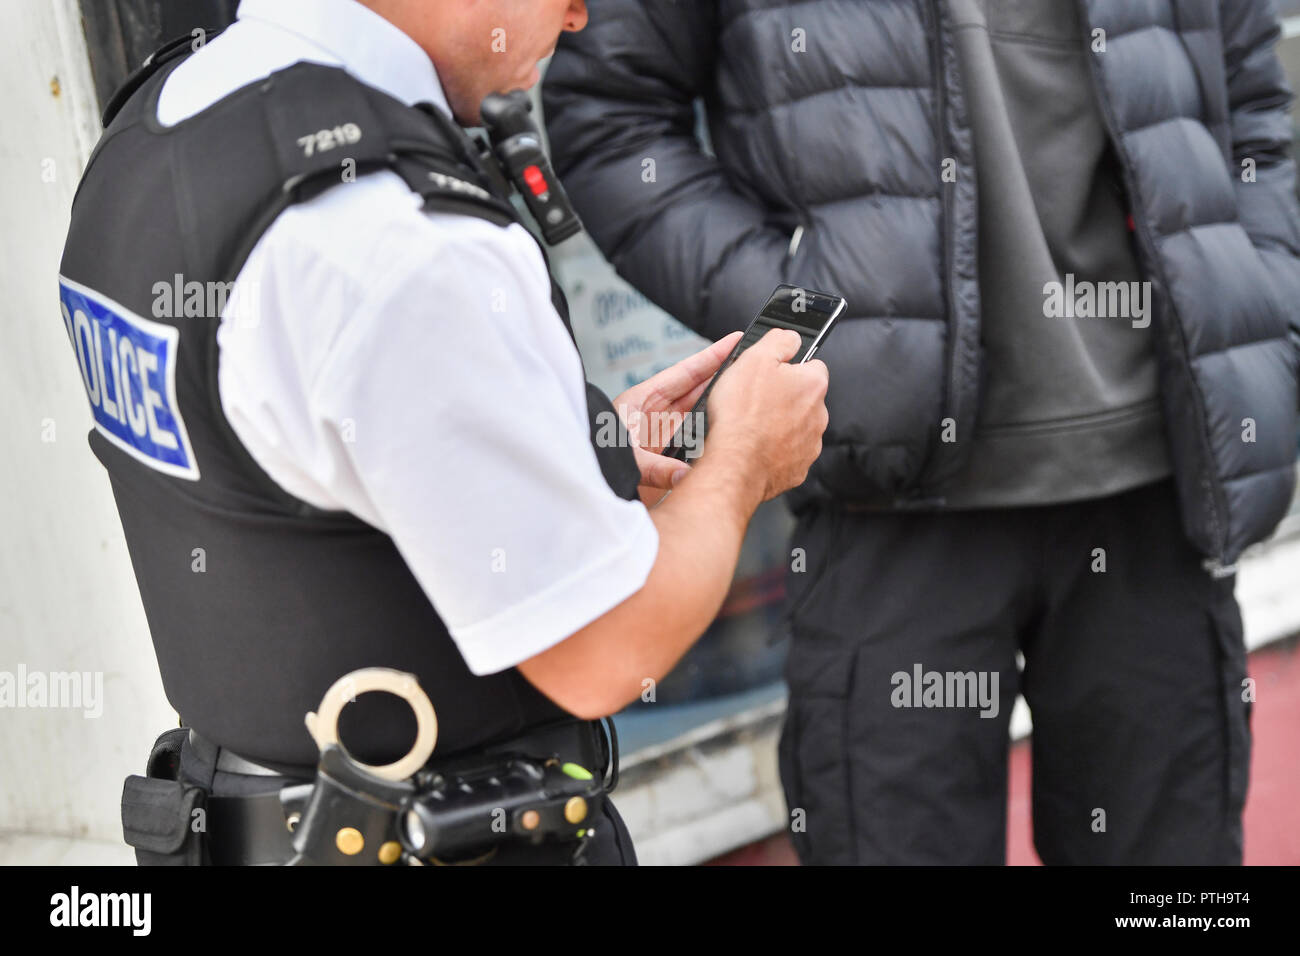 Le sergent Andy Ford de la Police de Merseyside remplit un formulaire de recherche et d'arrêt au cours d'une opération de recherche et d'arrêt dans la région de Liverpool Bootle Banque D'Images